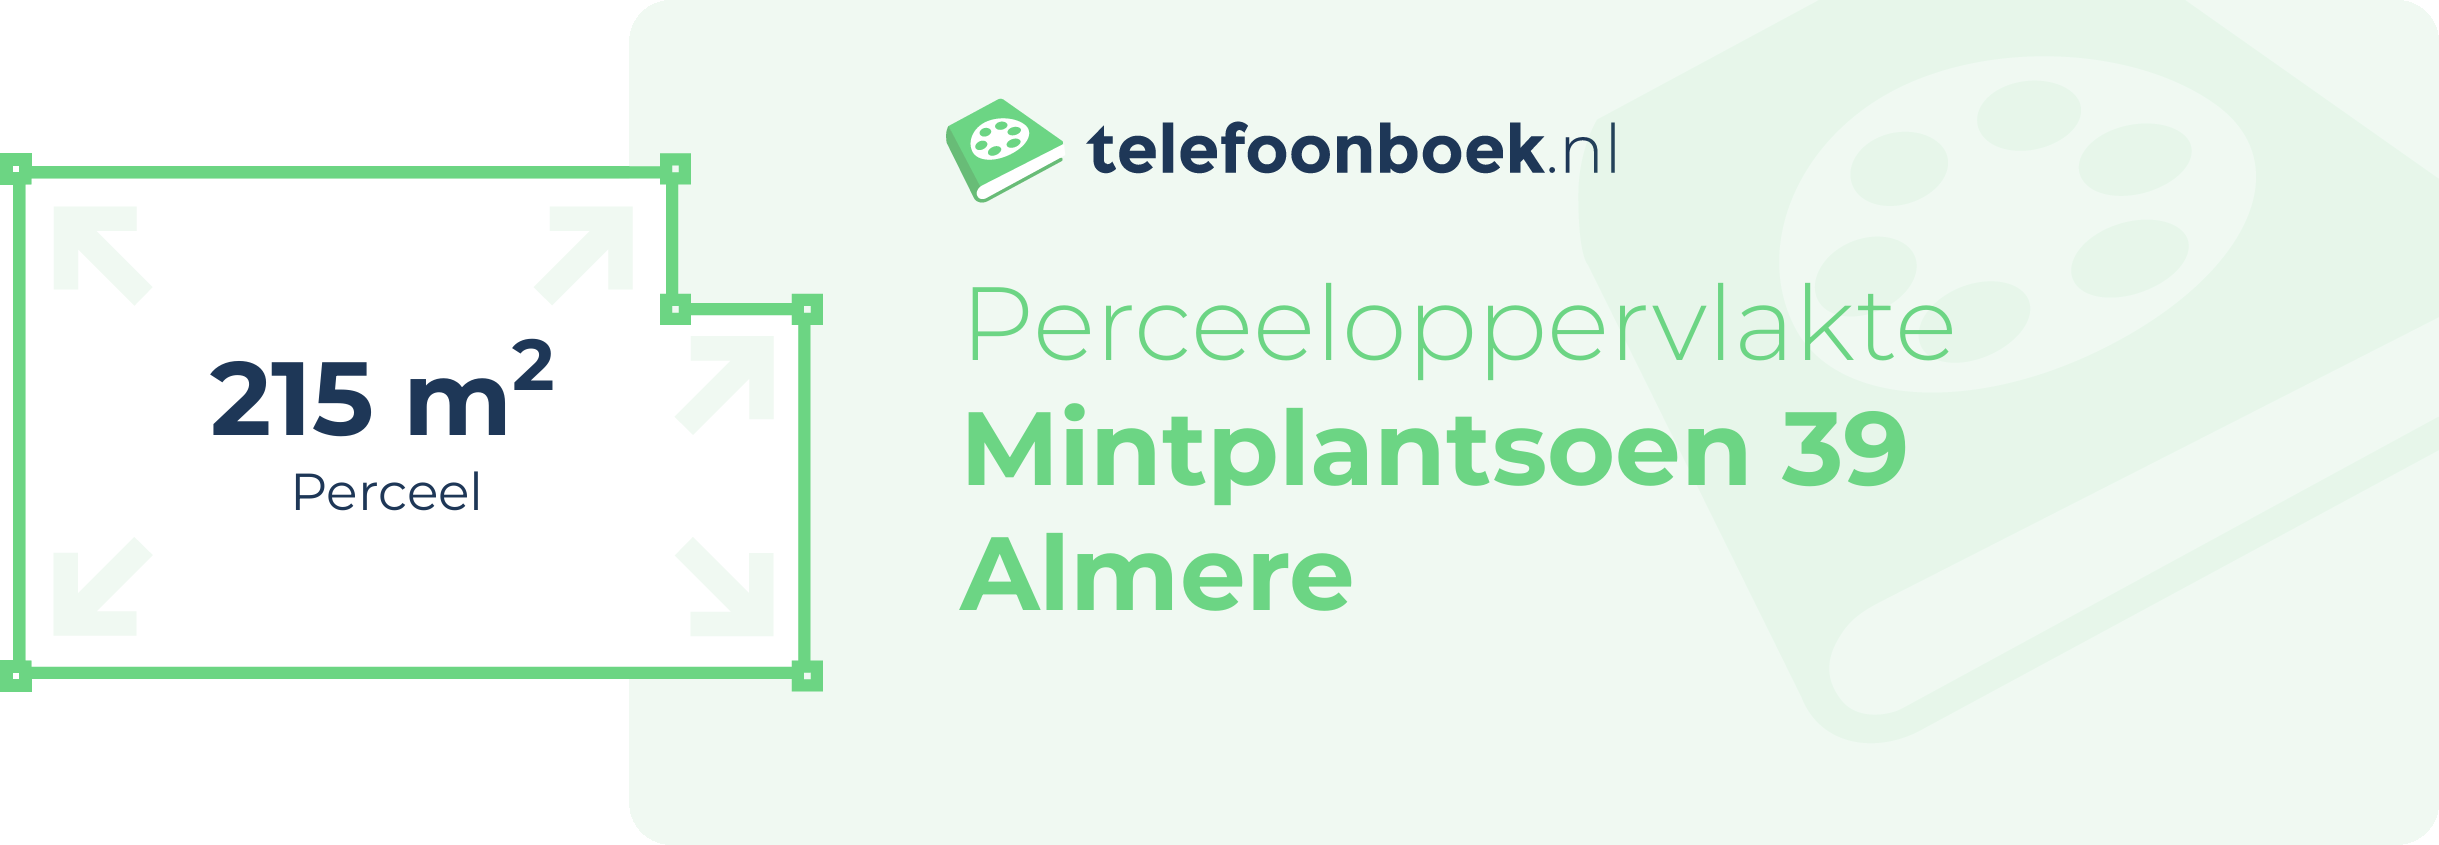 Perceeloppervlakte Mintplantsoen 39 Almere